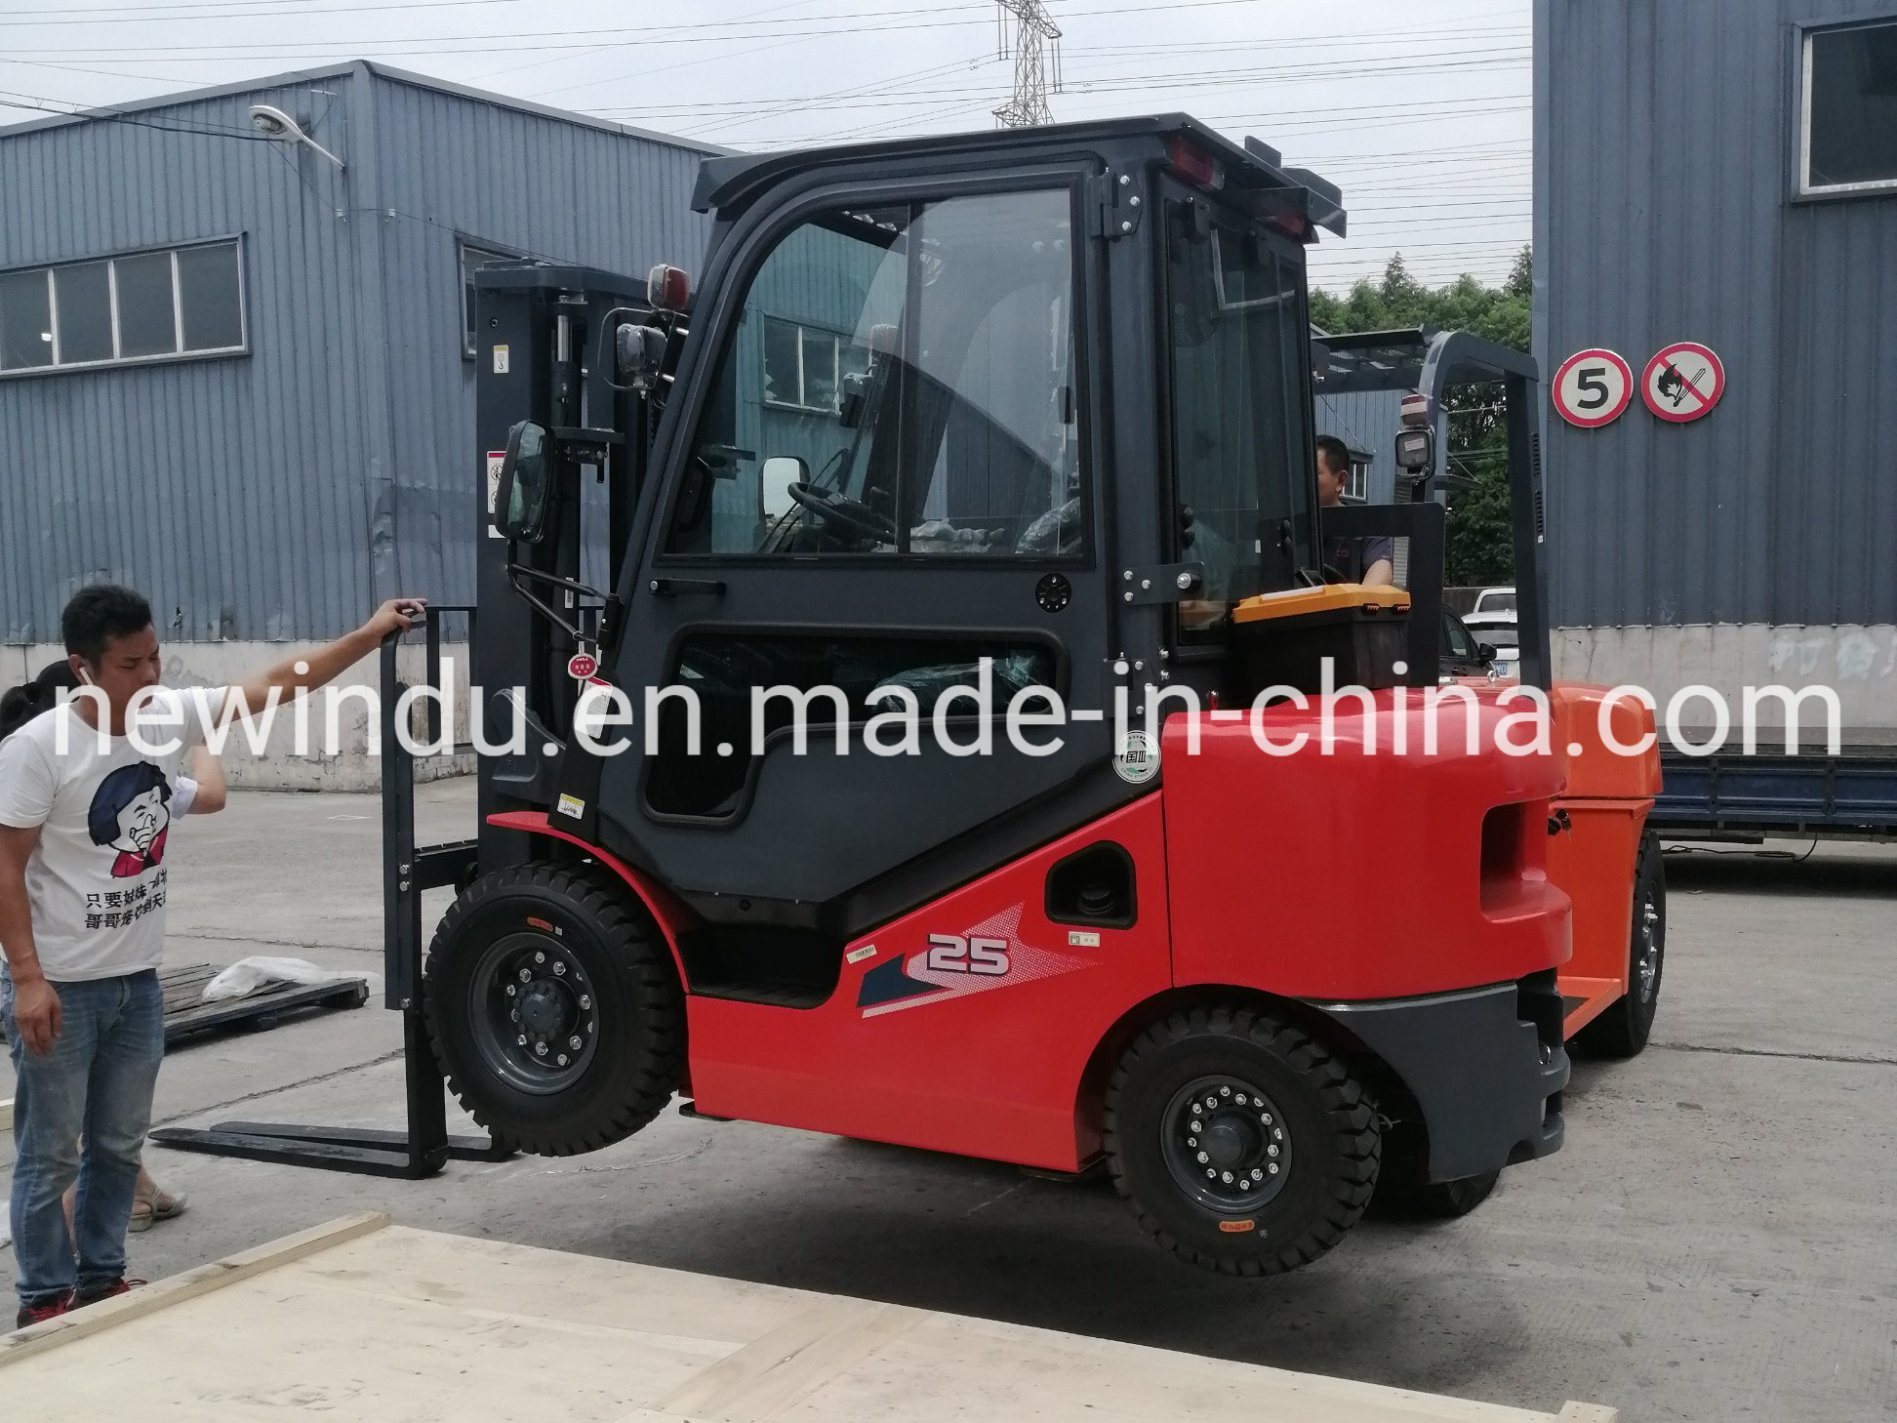 
                중국의 유명한 브랜드 Heli 2.5톤 디젤 지게차 Cpcd25 판매
            